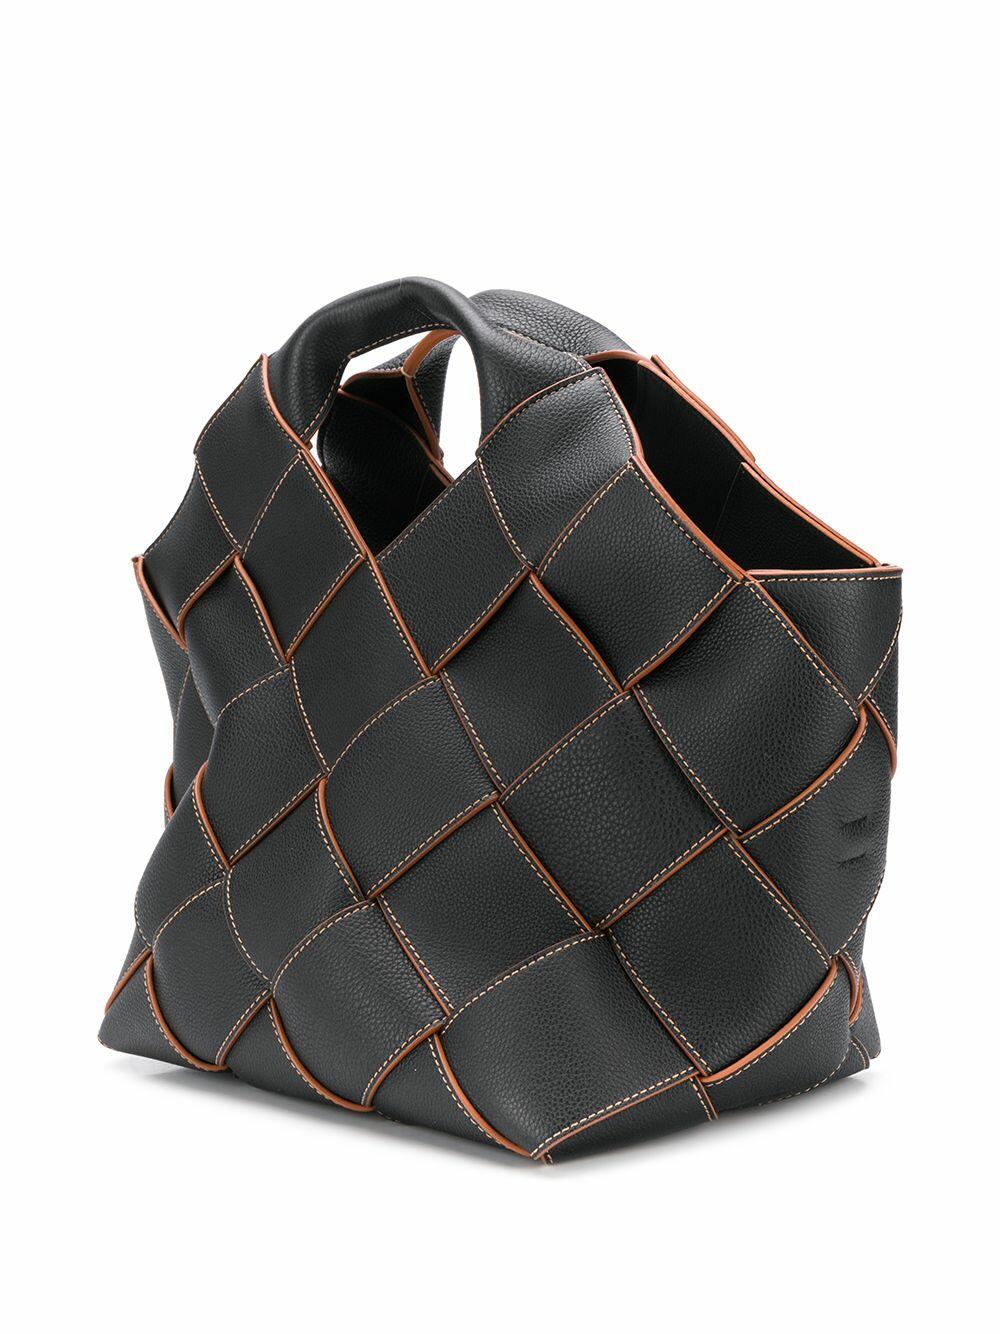 Loewe Leather Woven Basket Bag in Brown